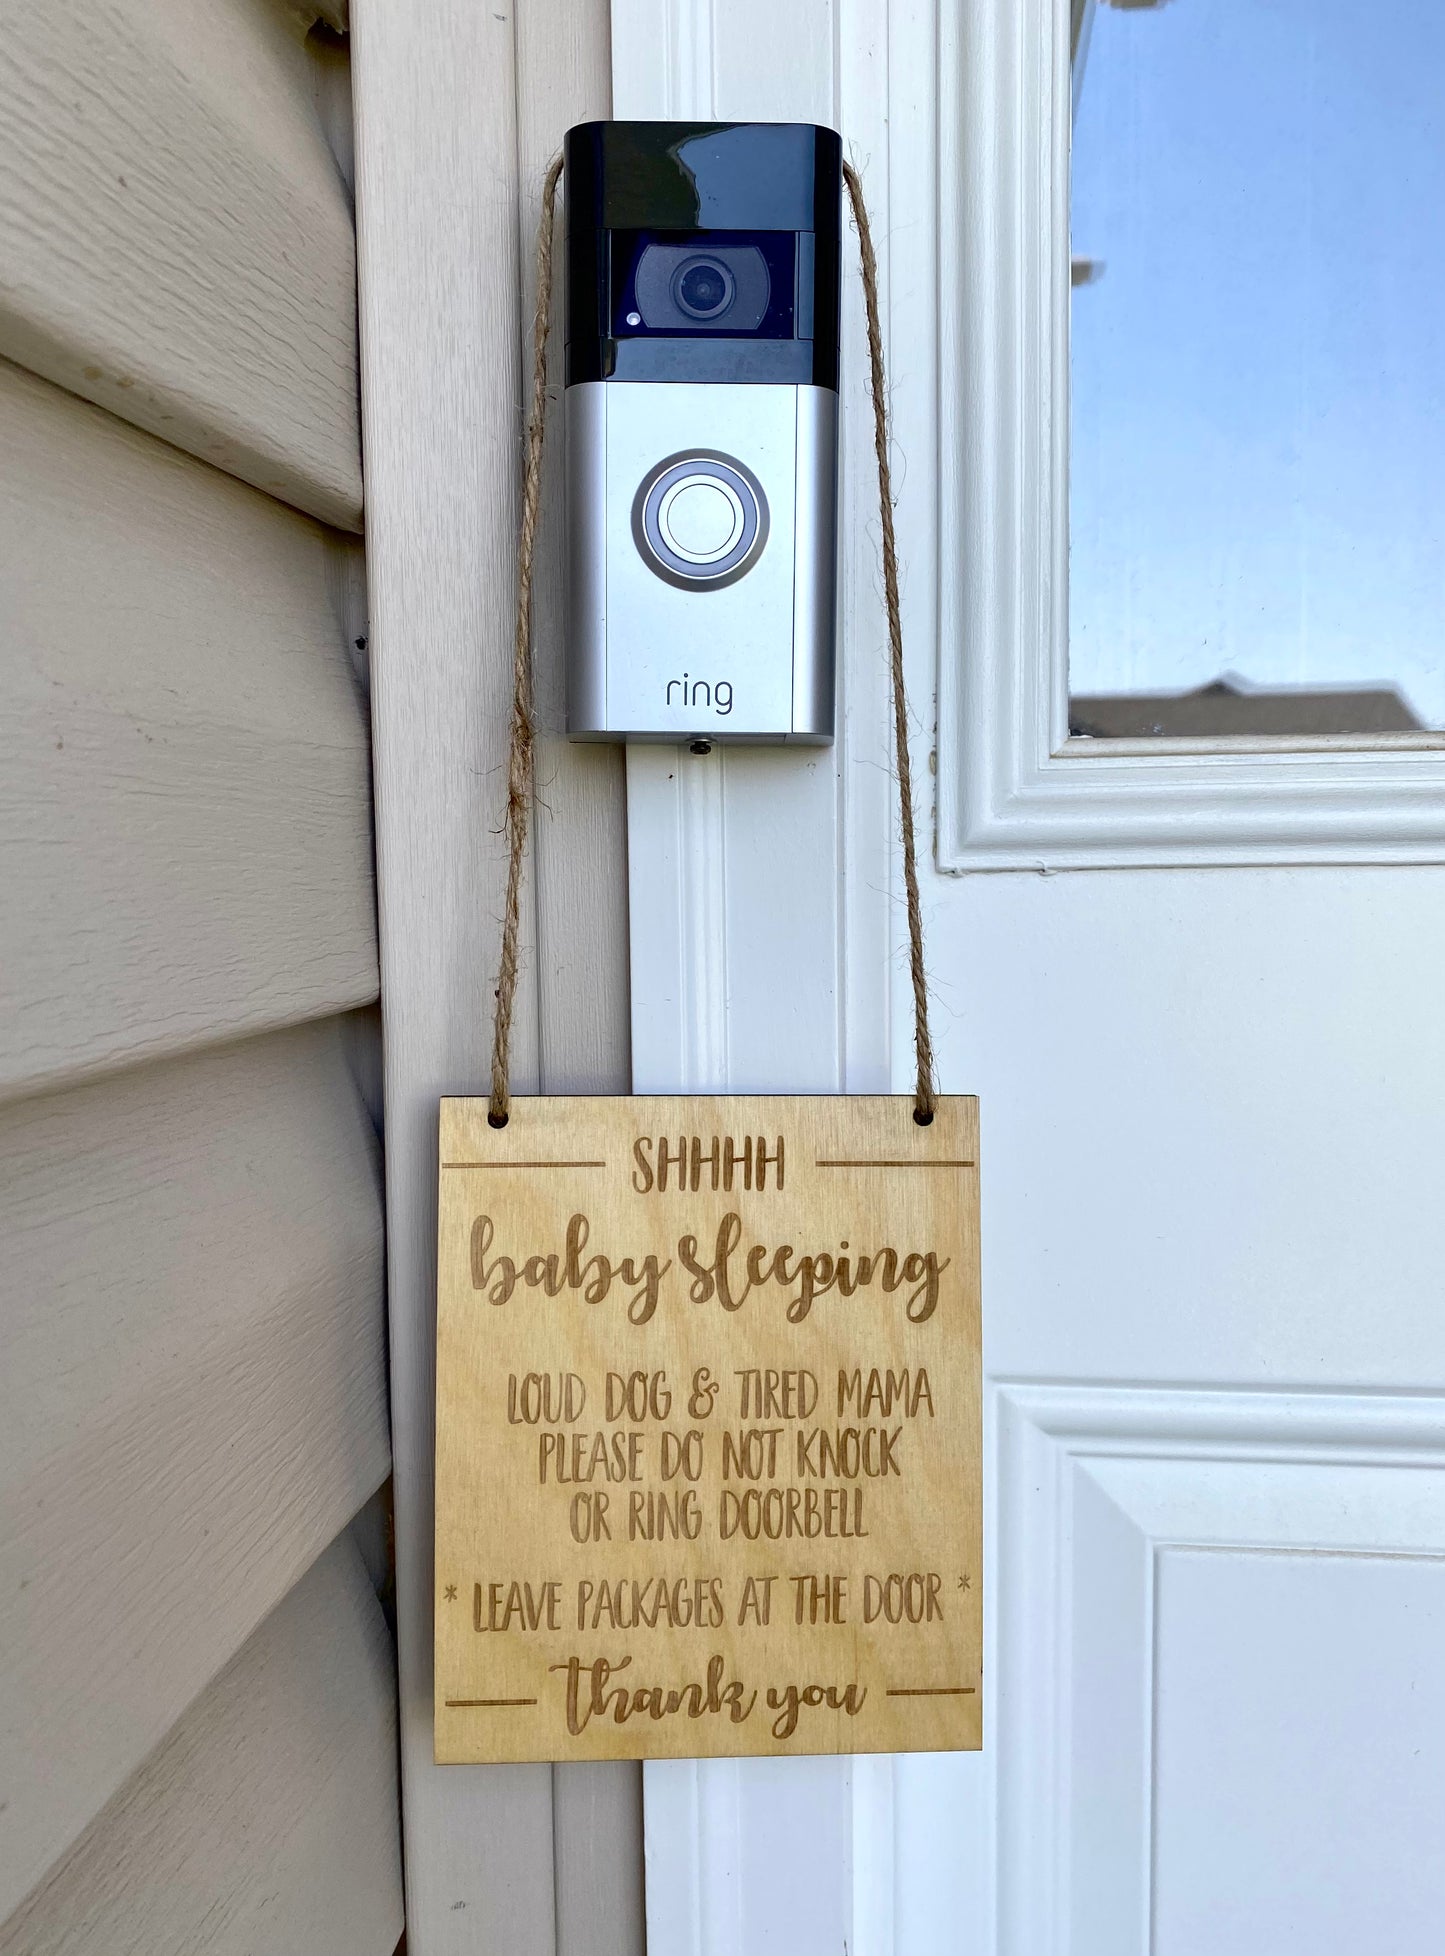 Baby Sleeping Doorbell Sign